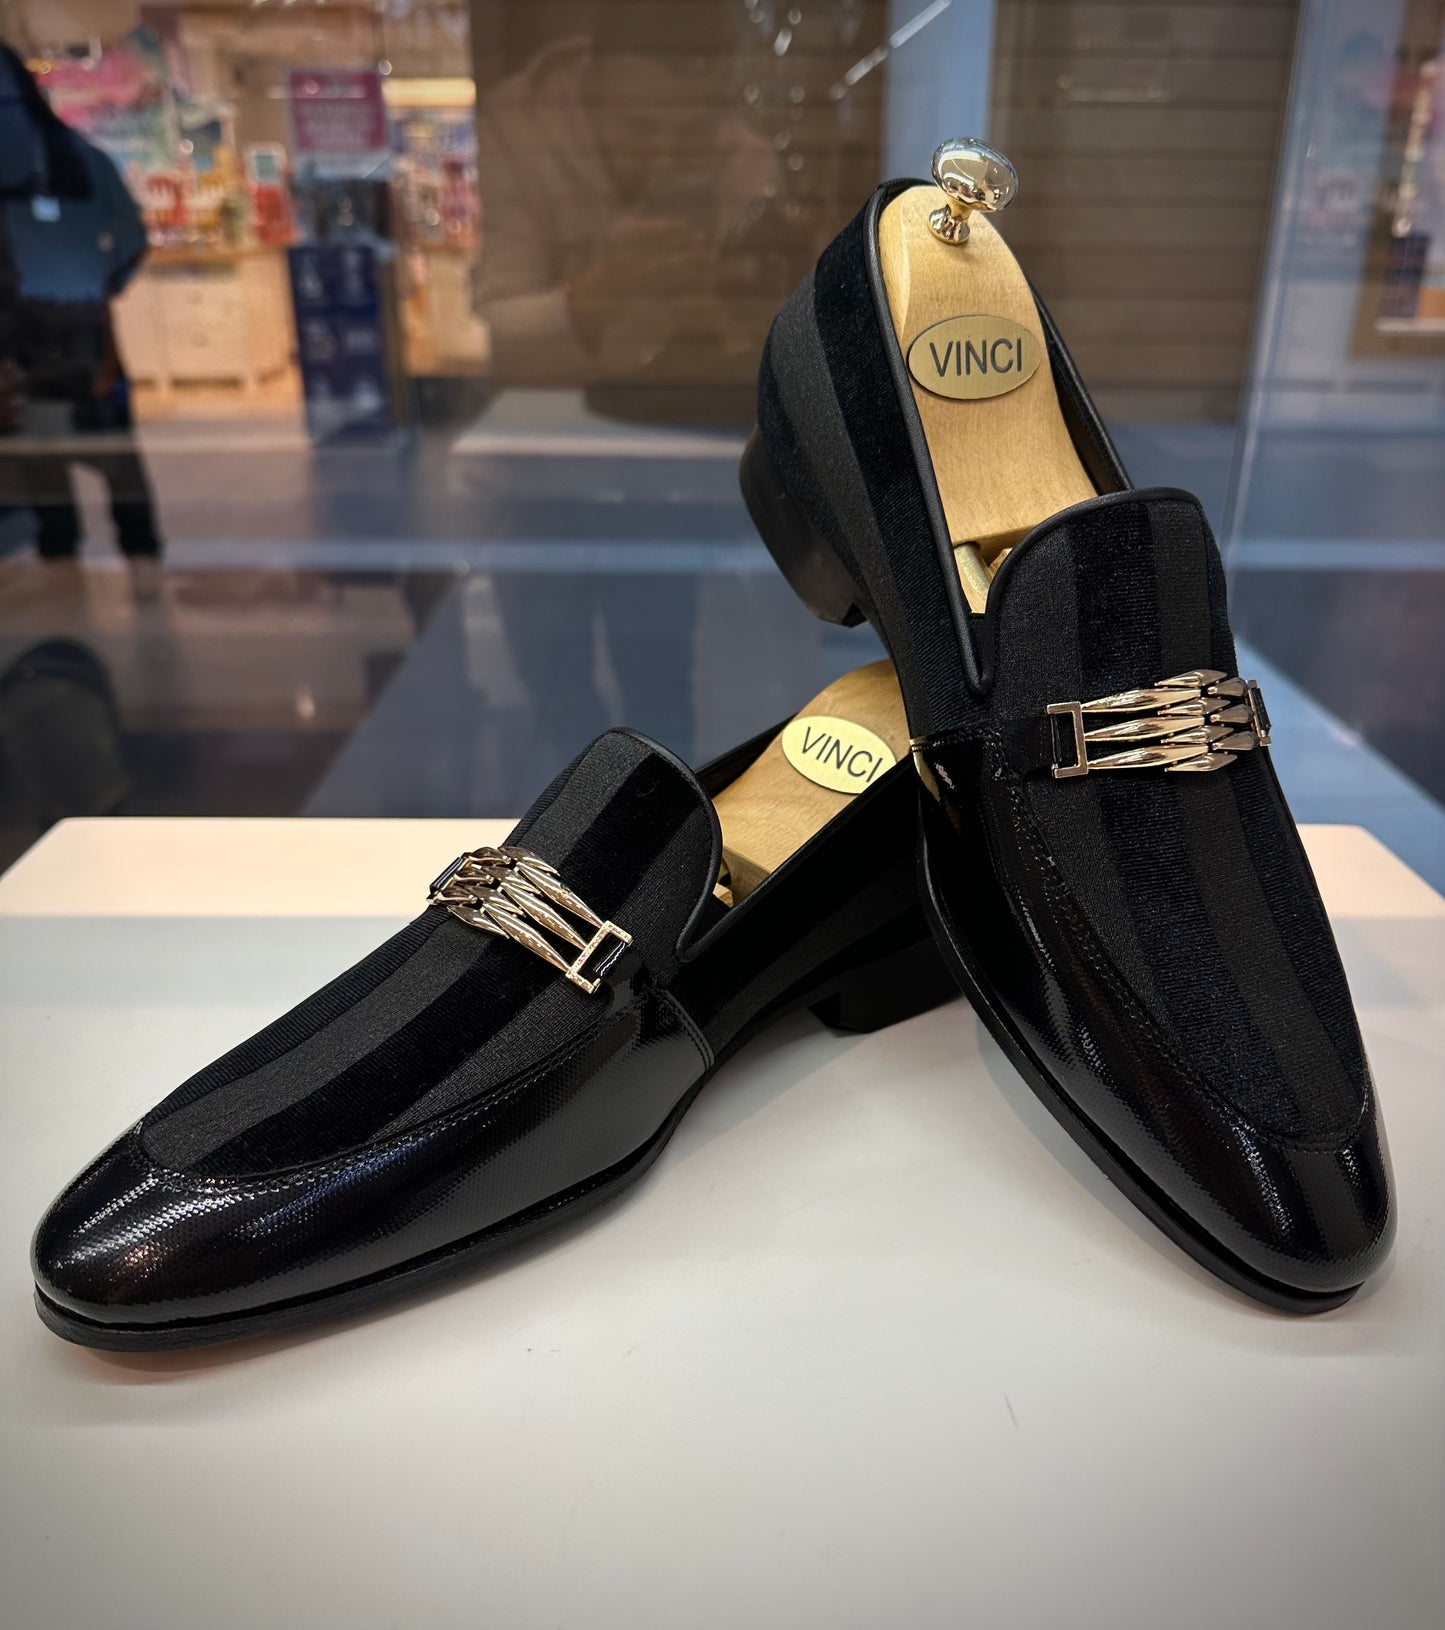 The Pontalto Leather Men Shoe Black Bit Loafer